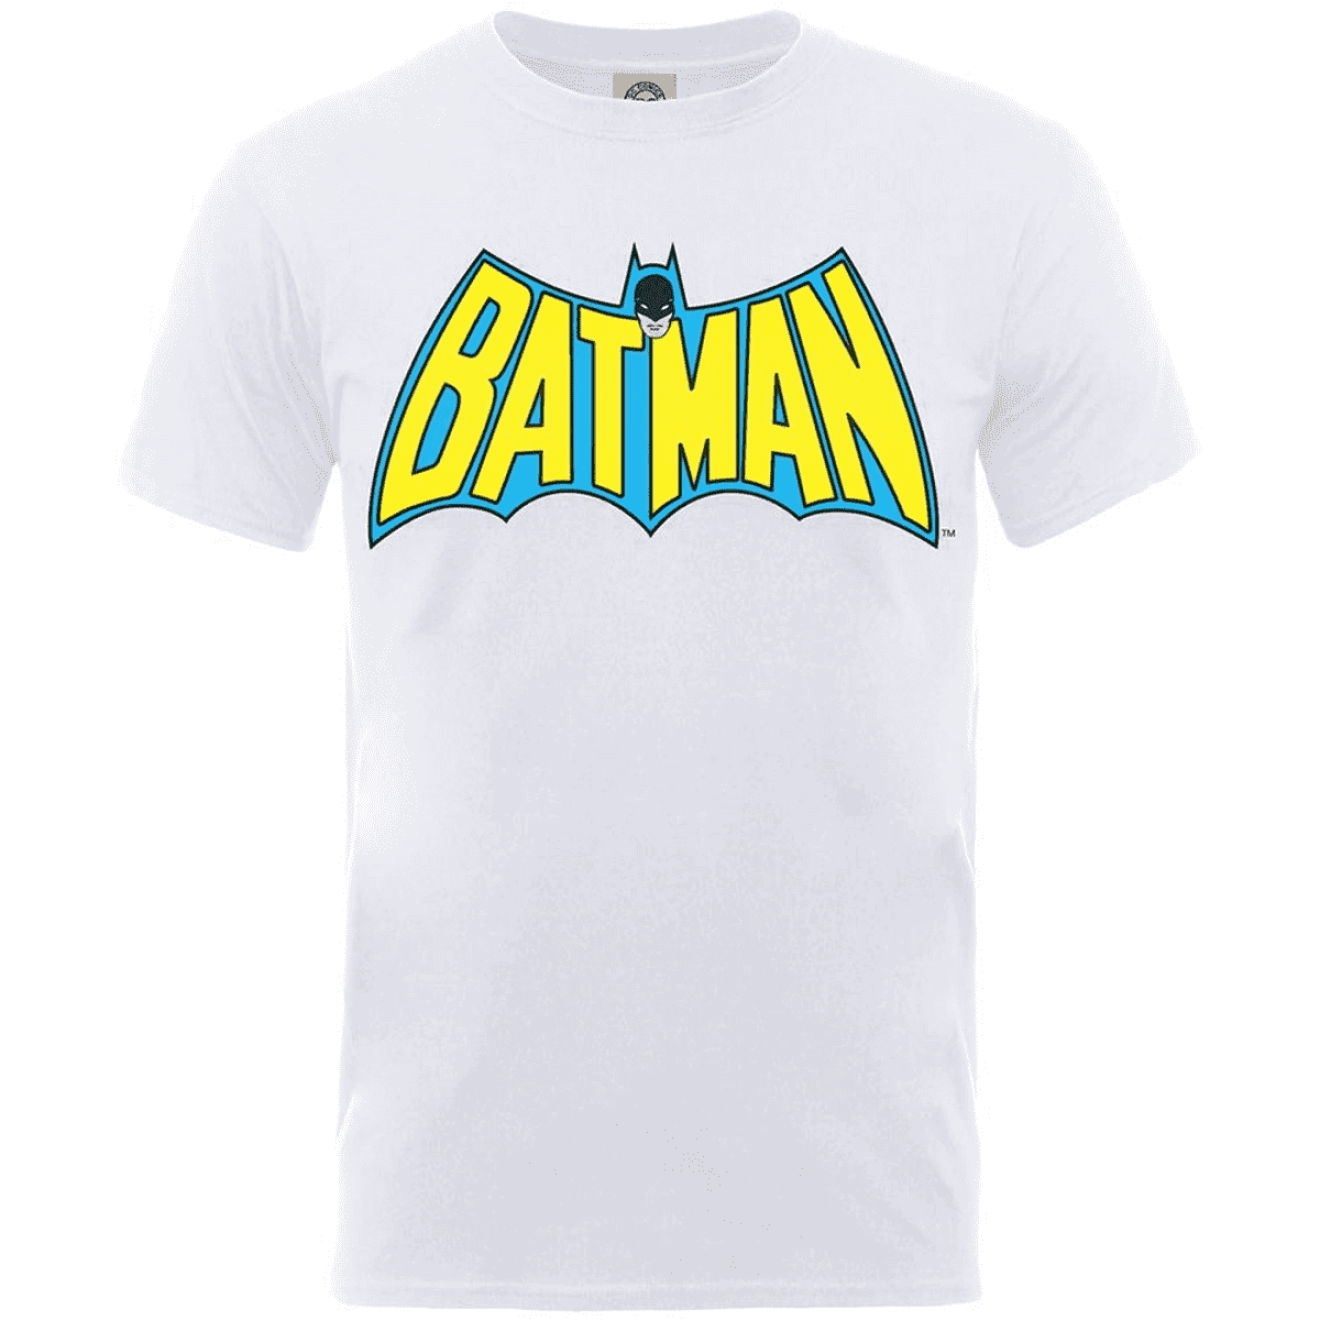 Batman - Kinder T-Shirt Retro